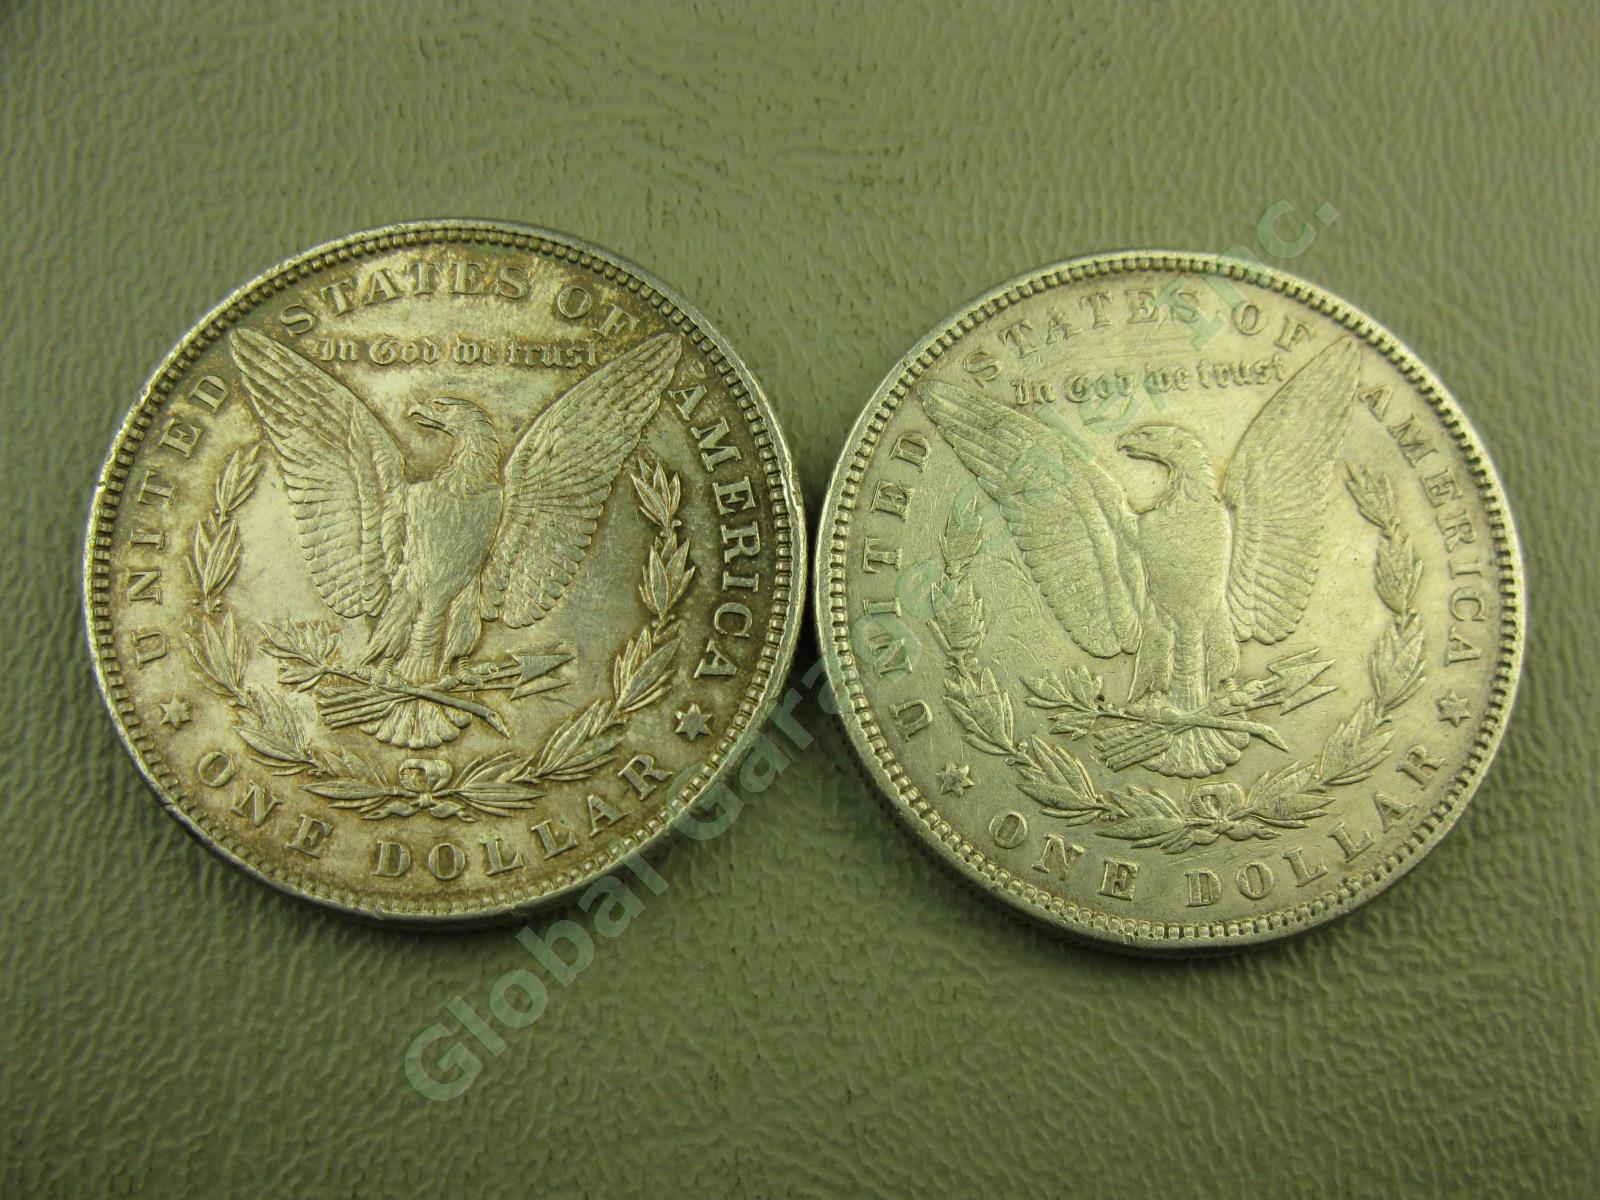 10 Morgan Liberty 1879-1891 Silver Dollar Coins Lot 1880-O 1881-O 1882 1886 1889 6